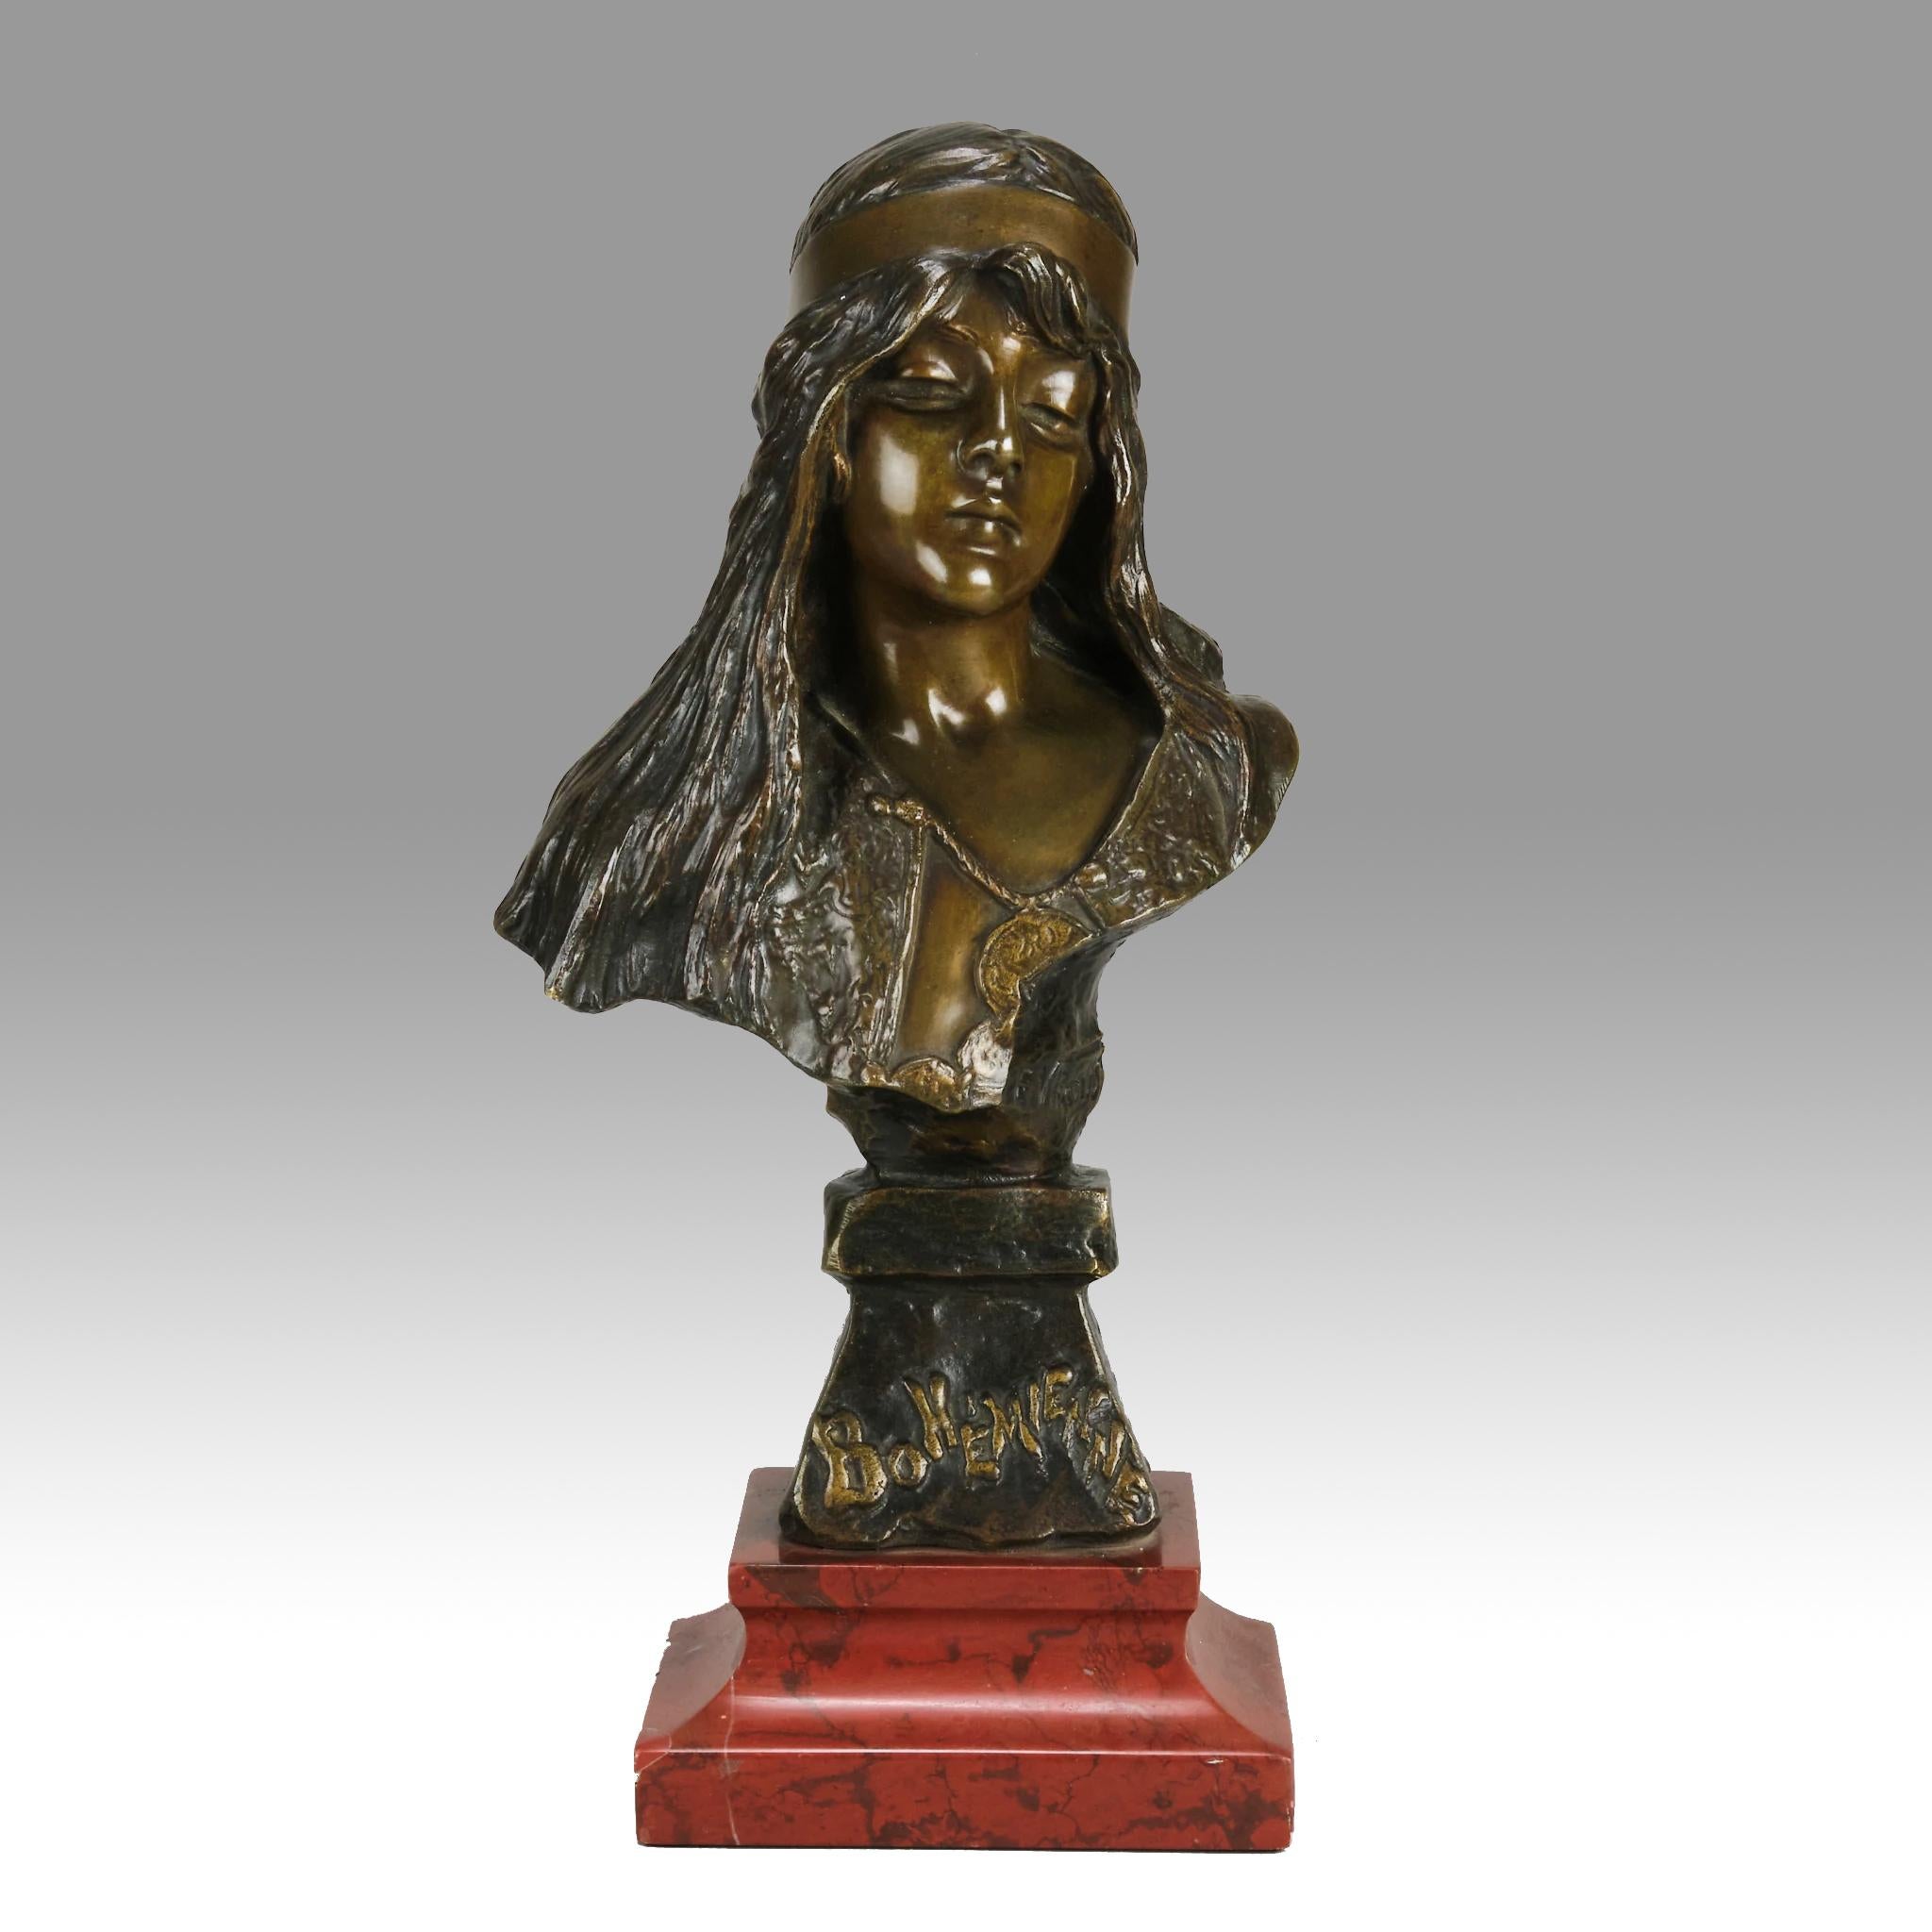 Bezaubernde französische Bronzebüste einer schönen Frau aus dem späten 19. Jahrhundert, die durch die bunte, reiche braune Patinierung und die ausgezeichneten taktilen Oberflächendetails hervorgehoben wird und auf einem integrierten Bronzesockel mit